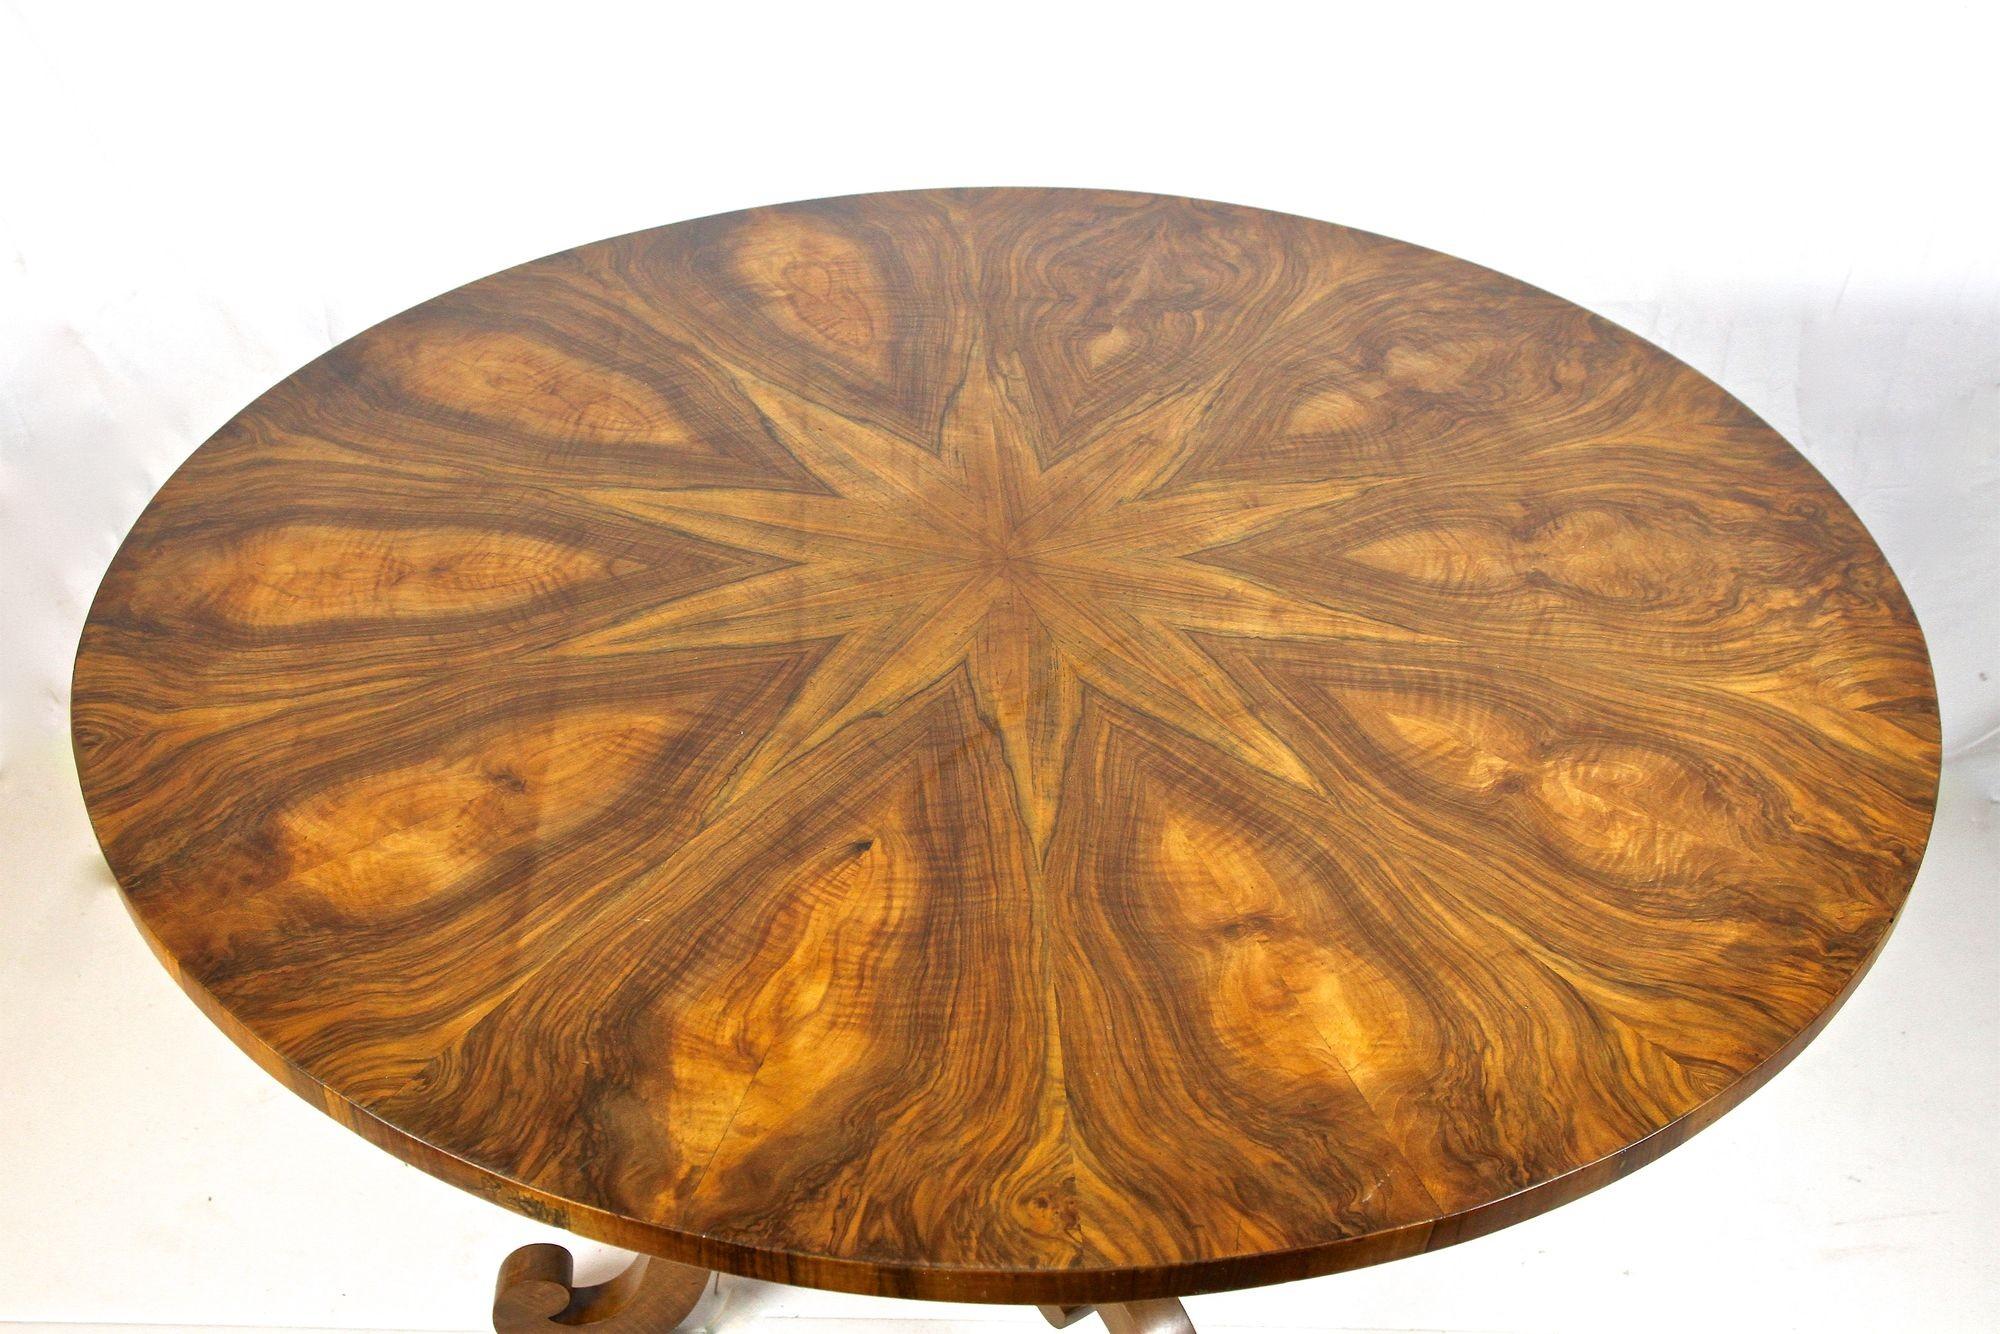 Magnifique table ronde de salle à manger ou table centrale Biedermeier du début du 19ème siècle, datant de la célèbre période à Vienne/Autriche. Fabriquée à la main vers 1830, cette magnifique table ronde antique Biedermeier impressionne par le